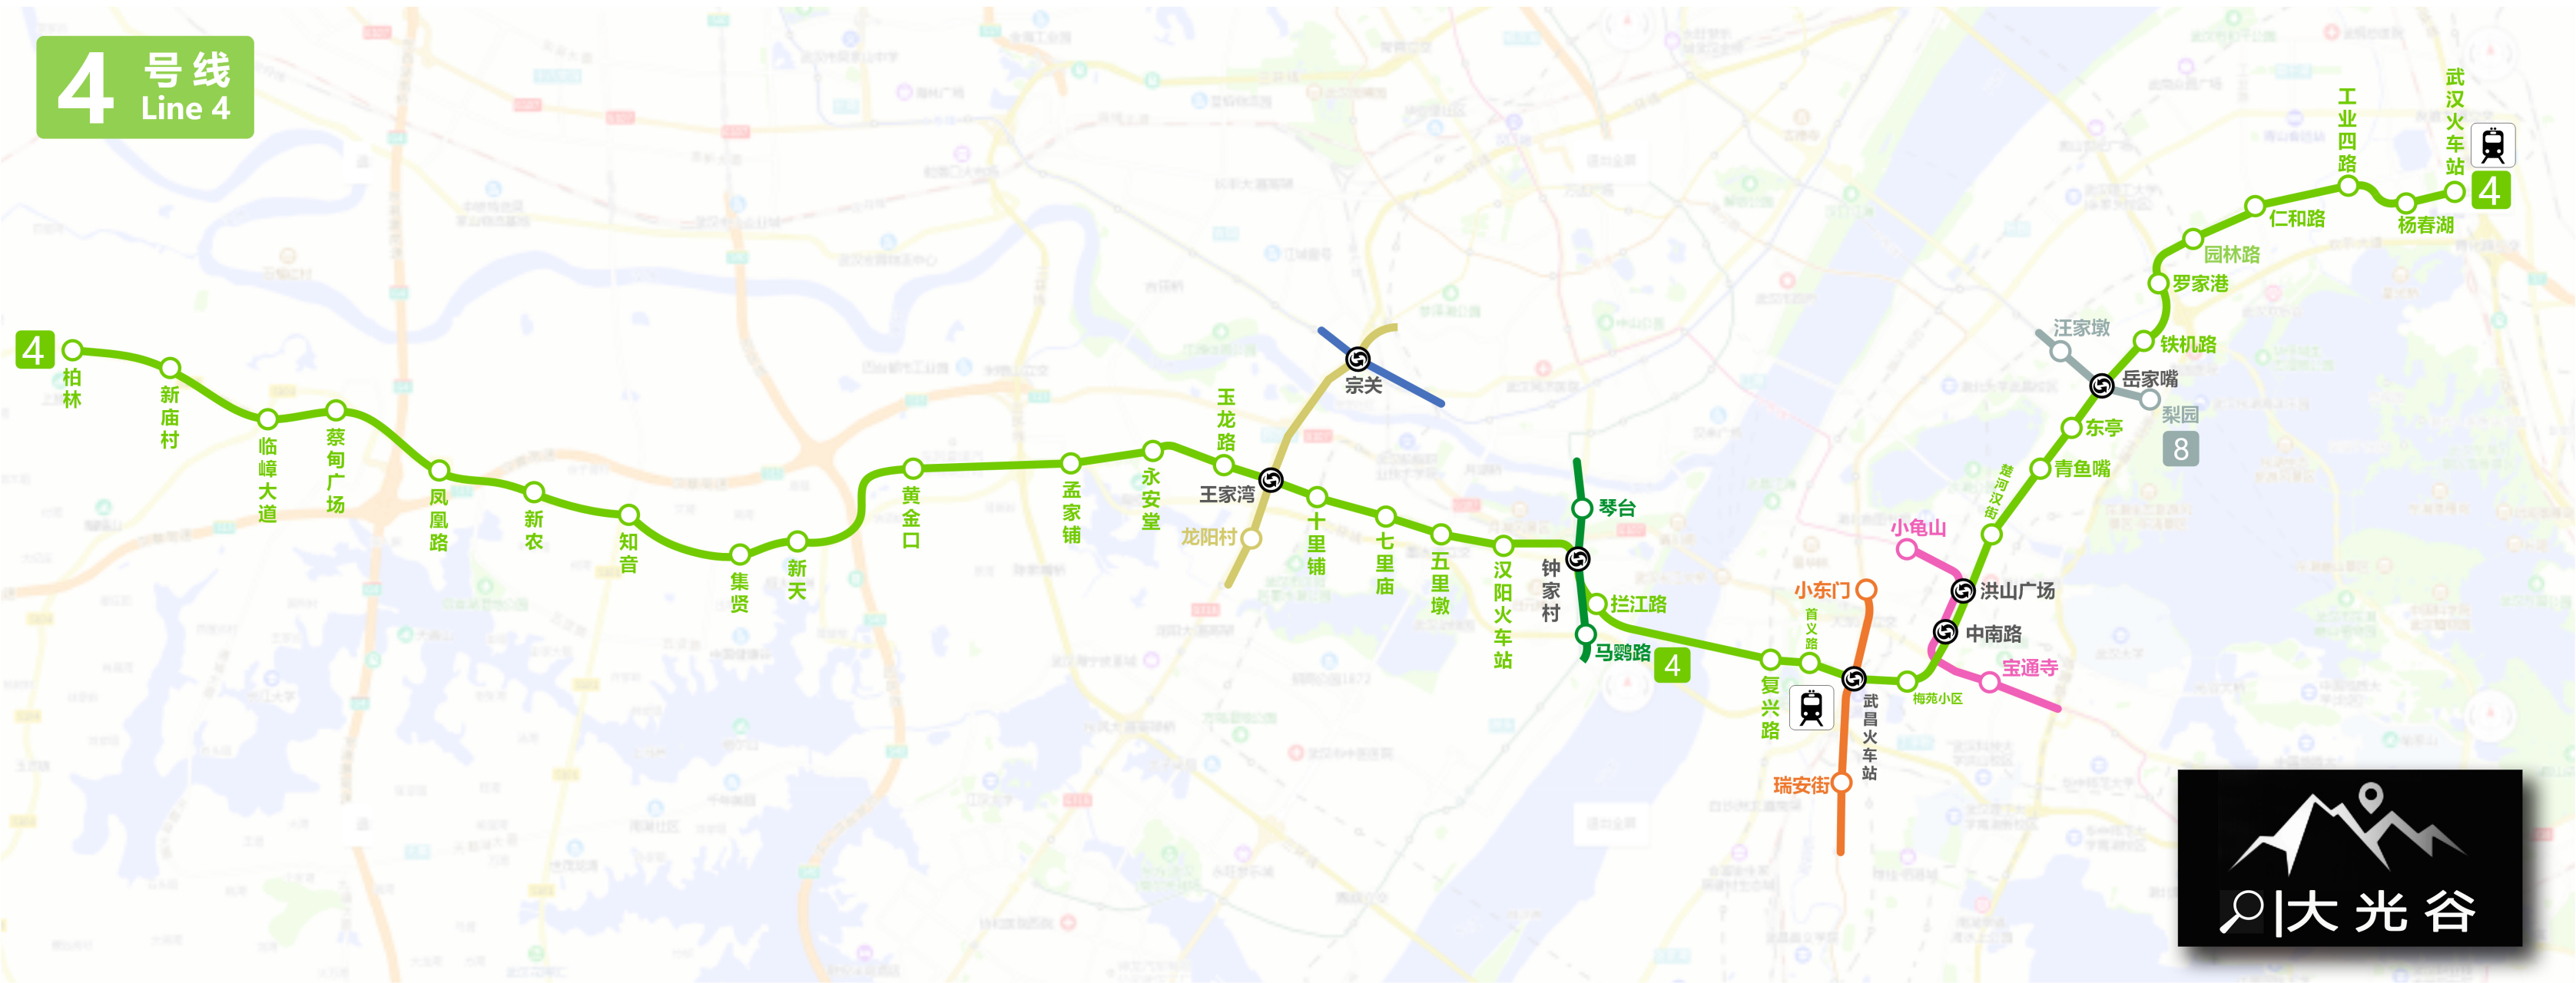 武汉地铁4号线运行图,武汉地铁日客流已突破266万.